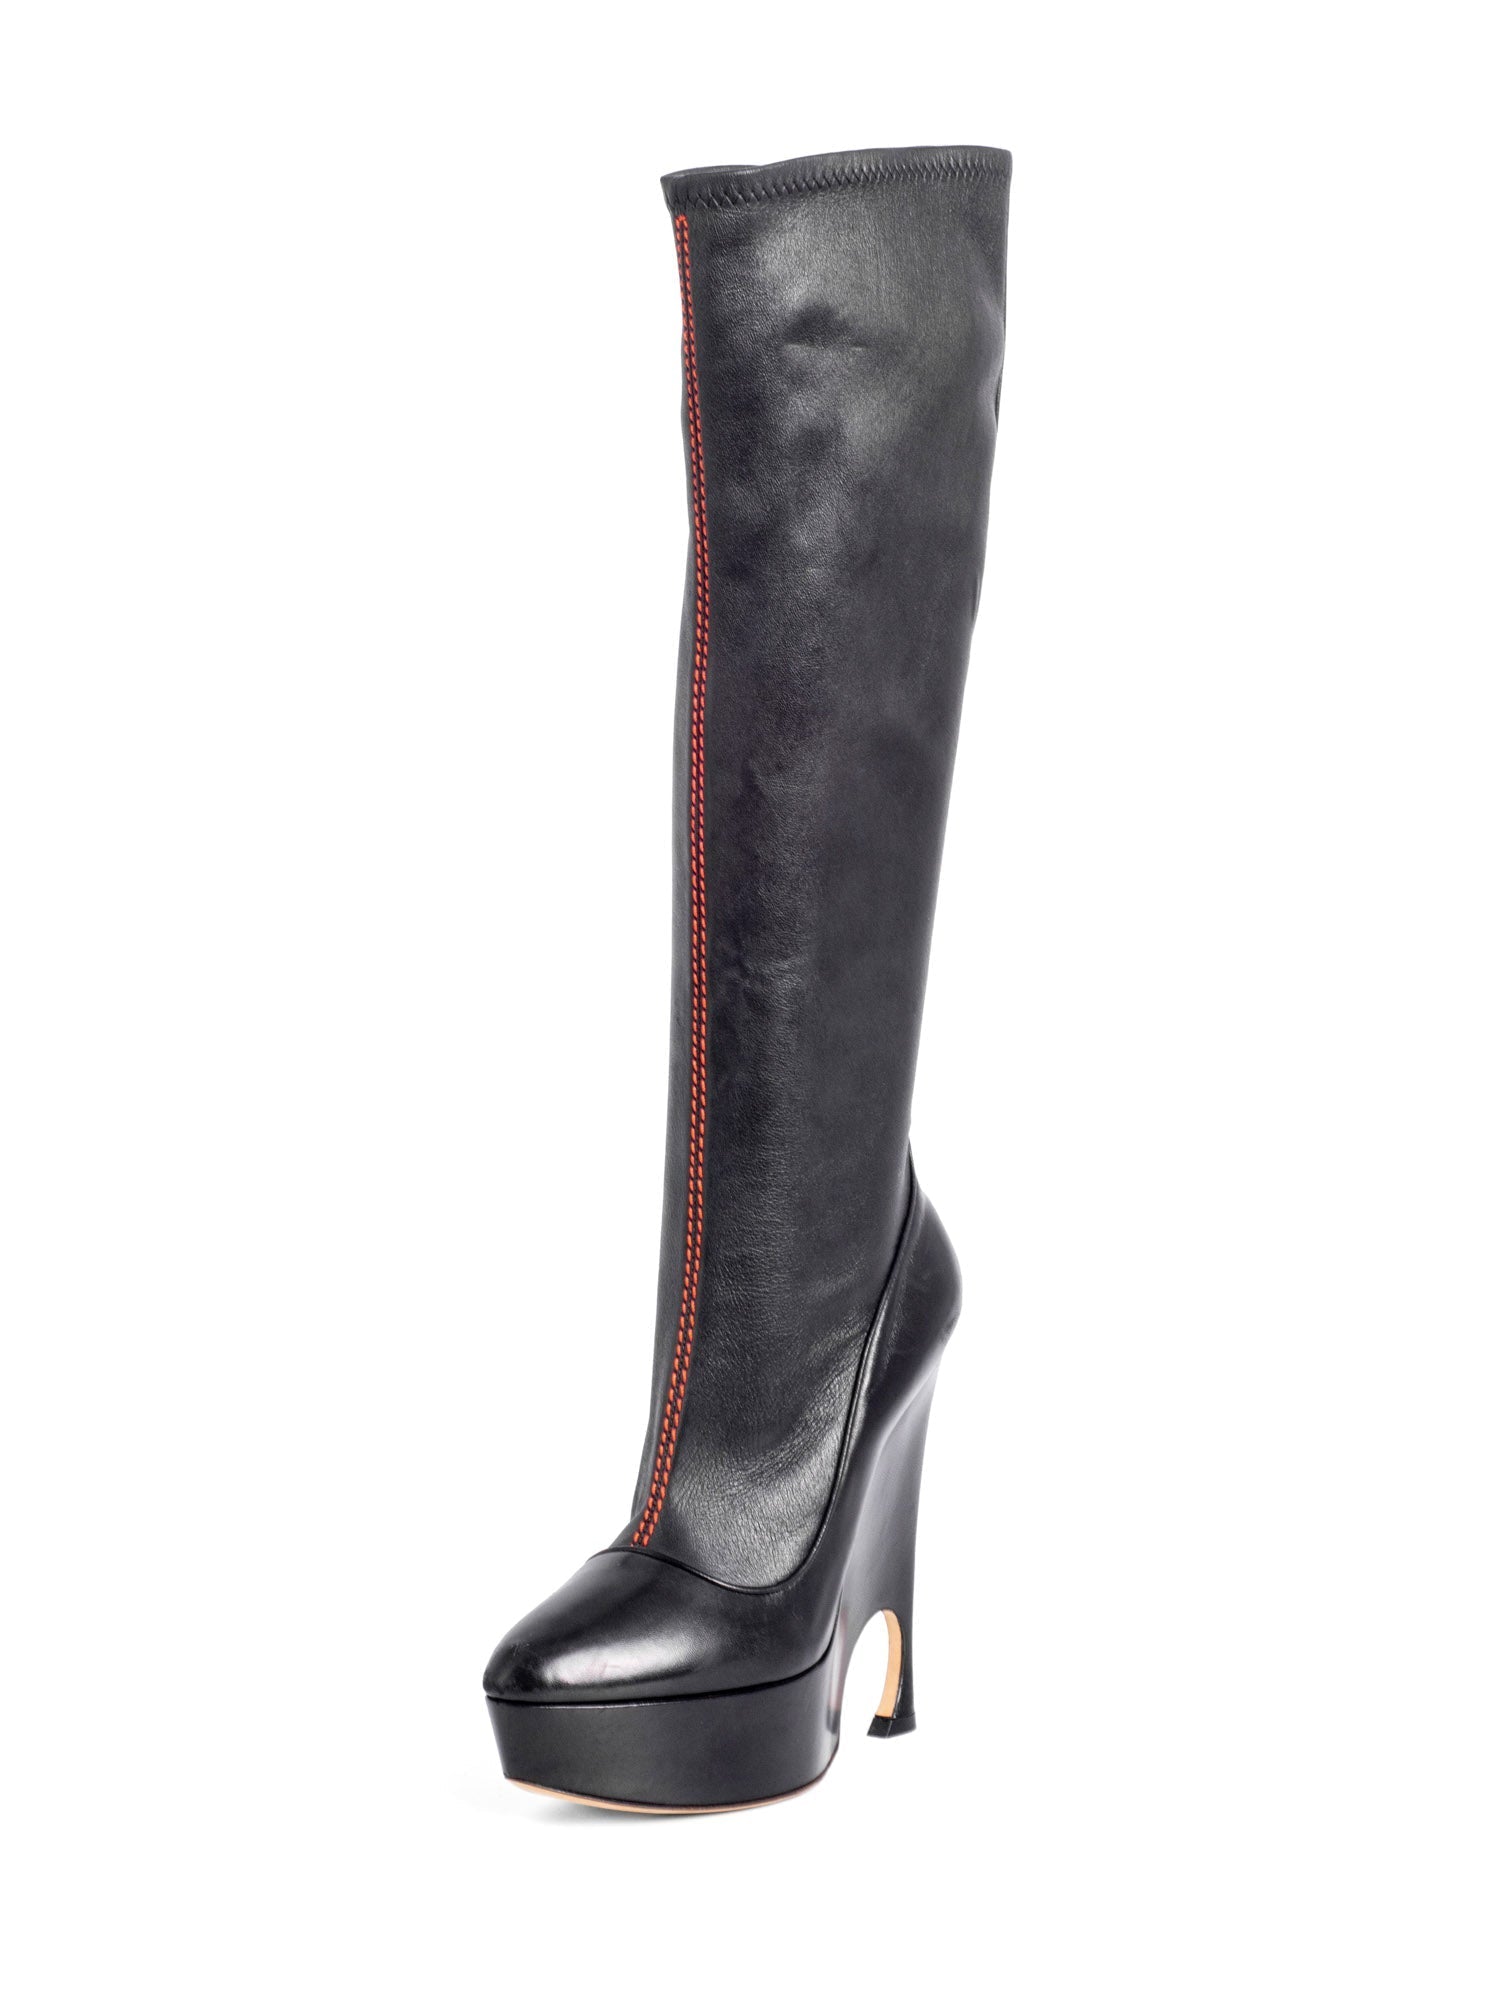 Christian Dior Stretchy Leather Vision Platform Boots Black-designer resale